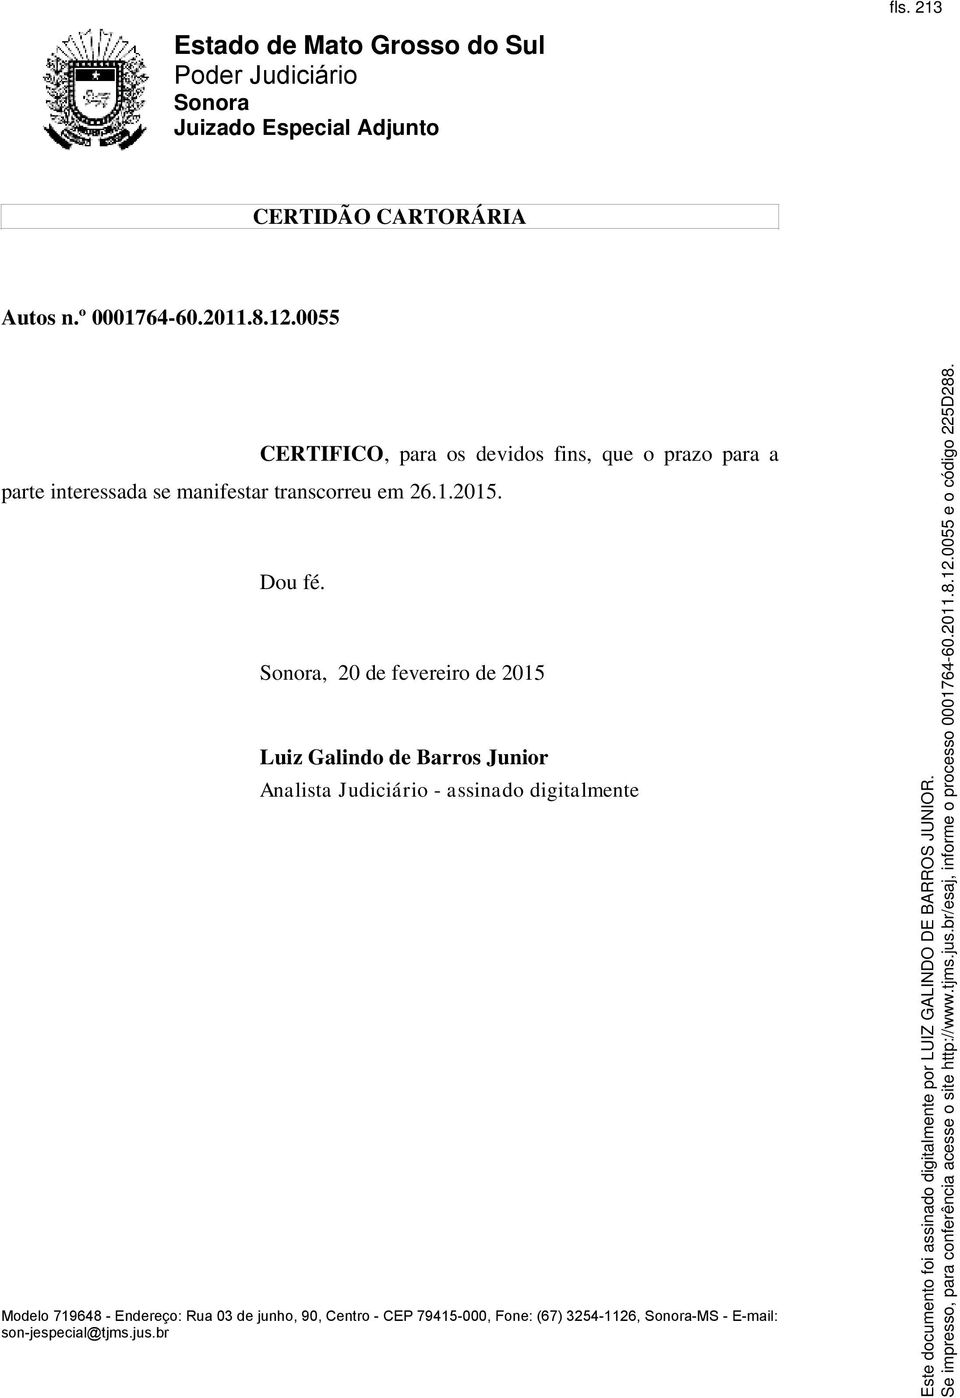 Sonora, 20 de fevereiro de 2015 Luiz Galindo de Barros Junior Analista Judiciário - assinado digitalmente Modelo 719648 - Endereço: Rua 03 de junho, 90, Centro - CEP